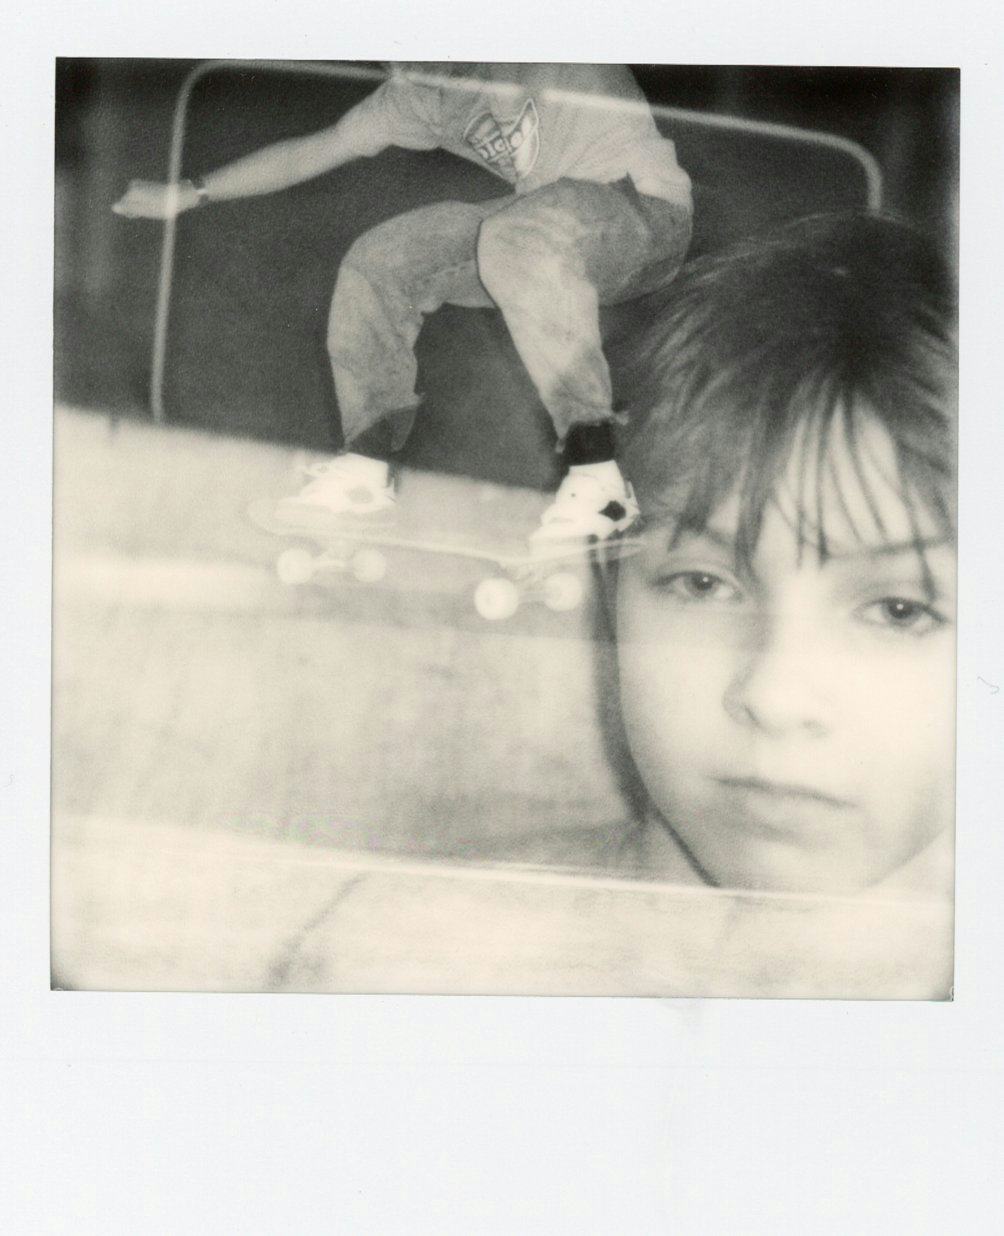 Polaroid of kid and someone skating